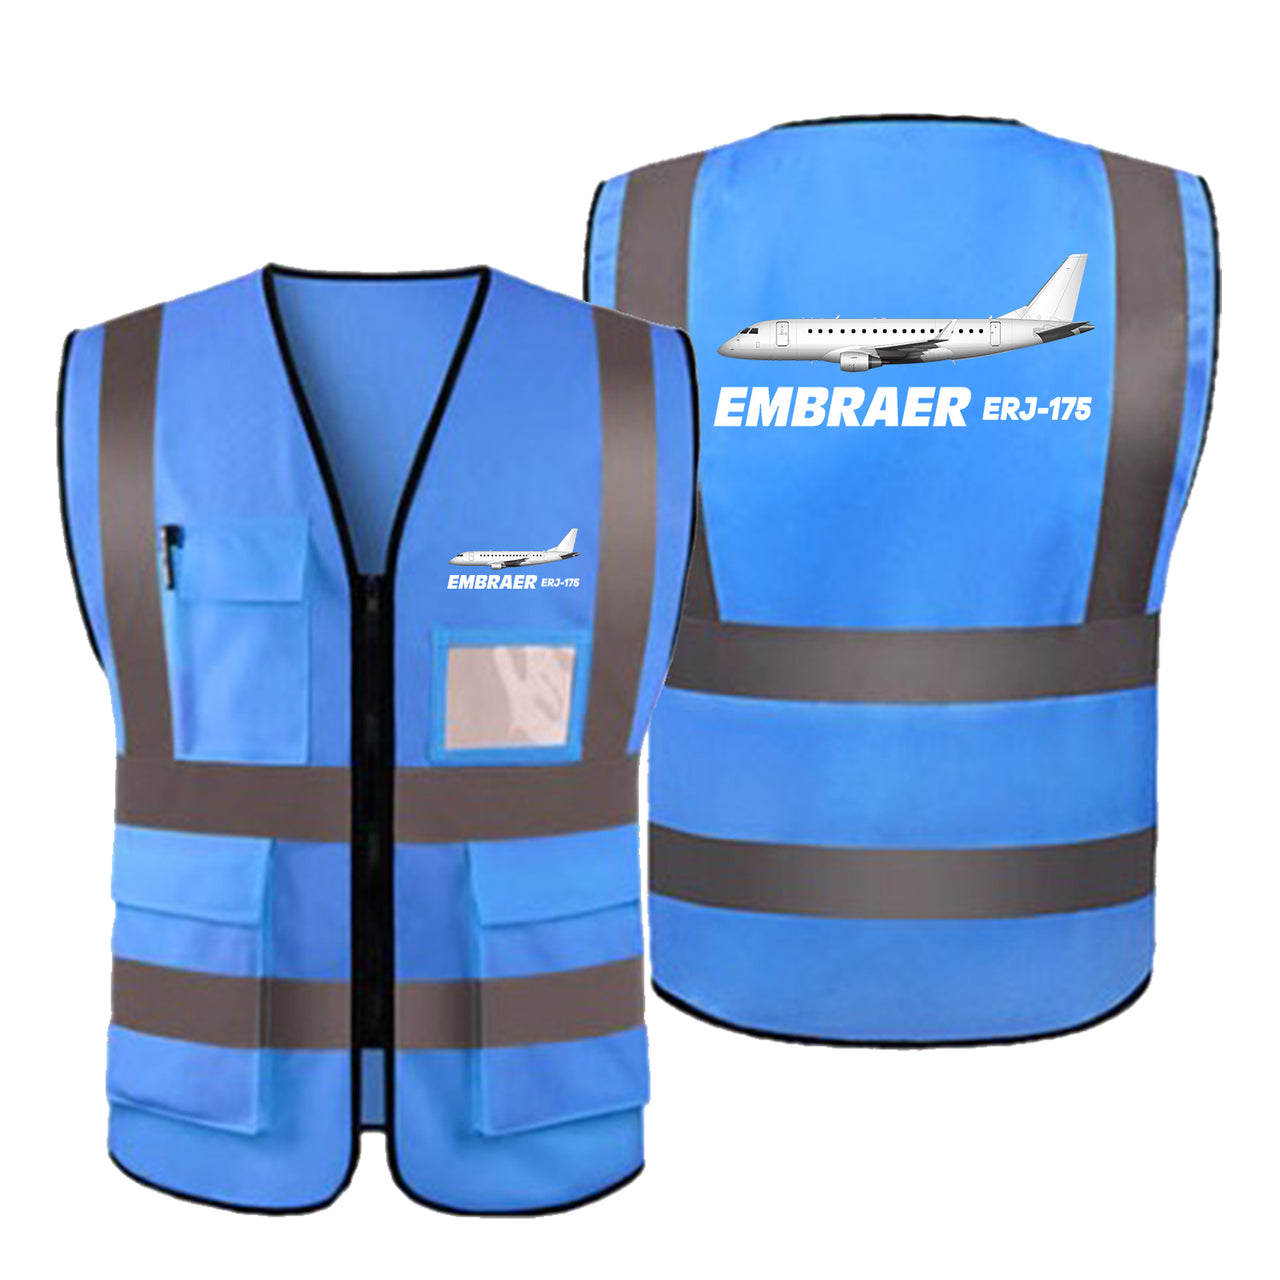 The Embraer ERJ-175 Designed Reflective Vests